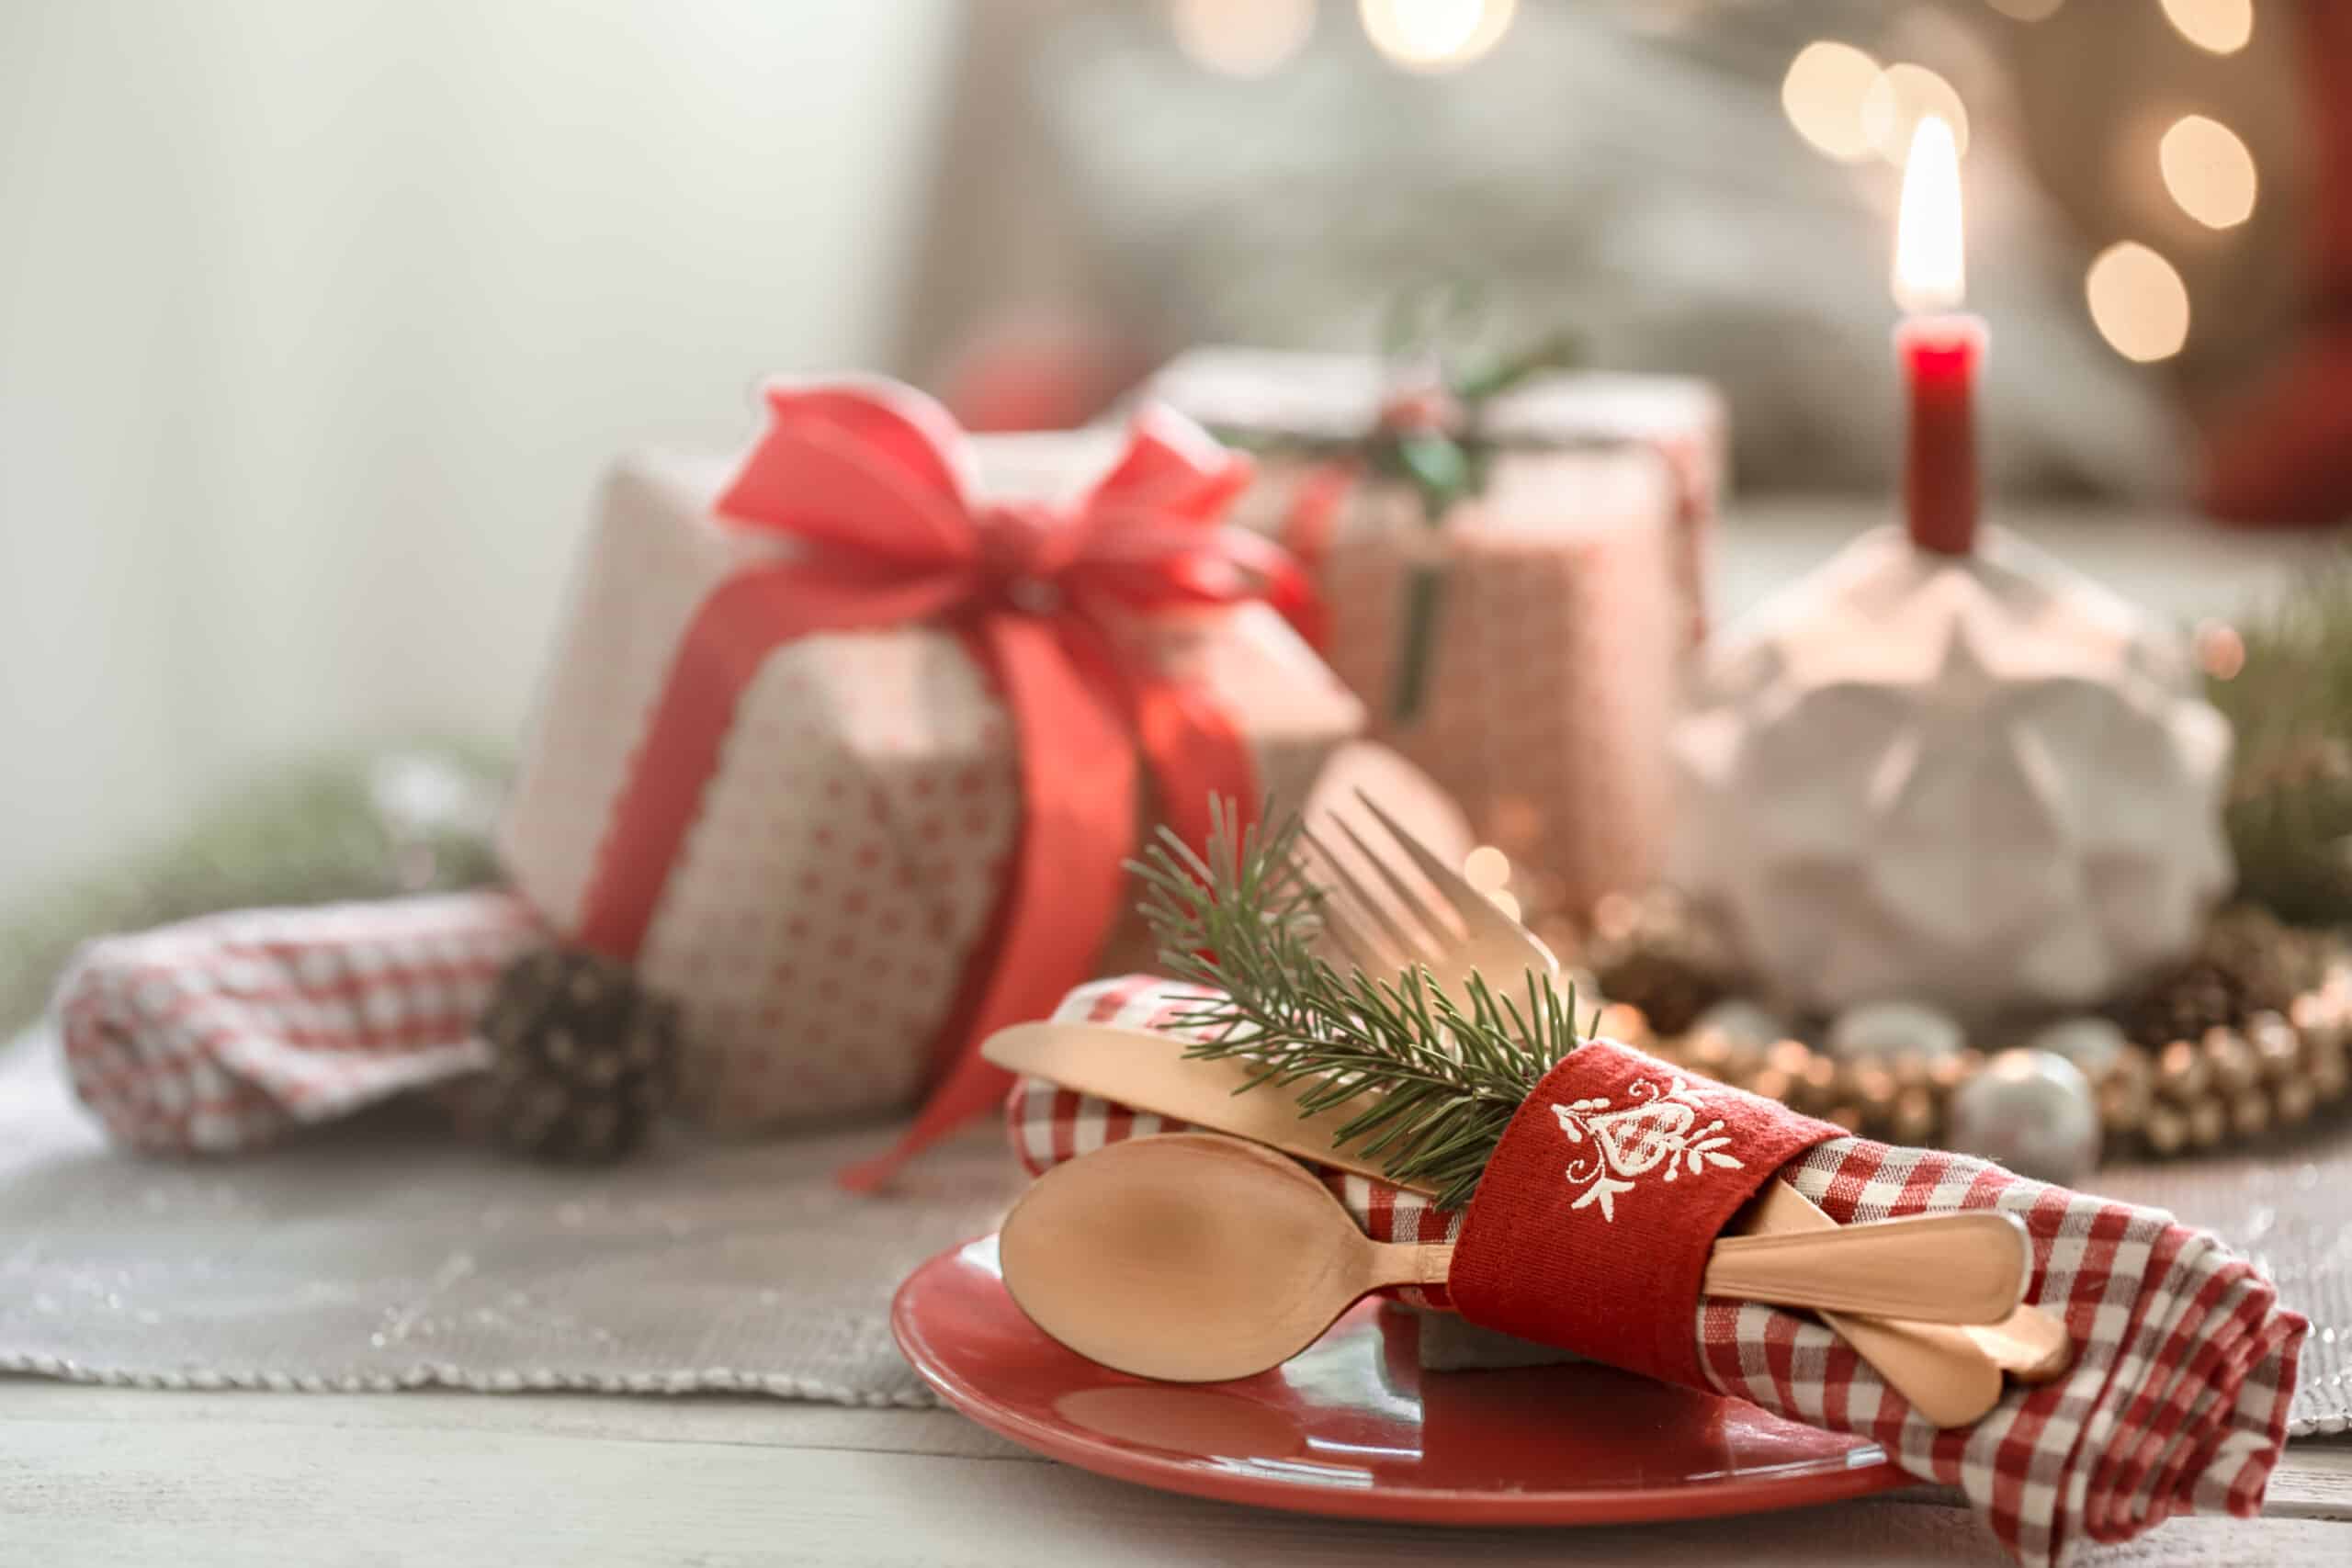 Ideas para decorar la mesa de Navidad